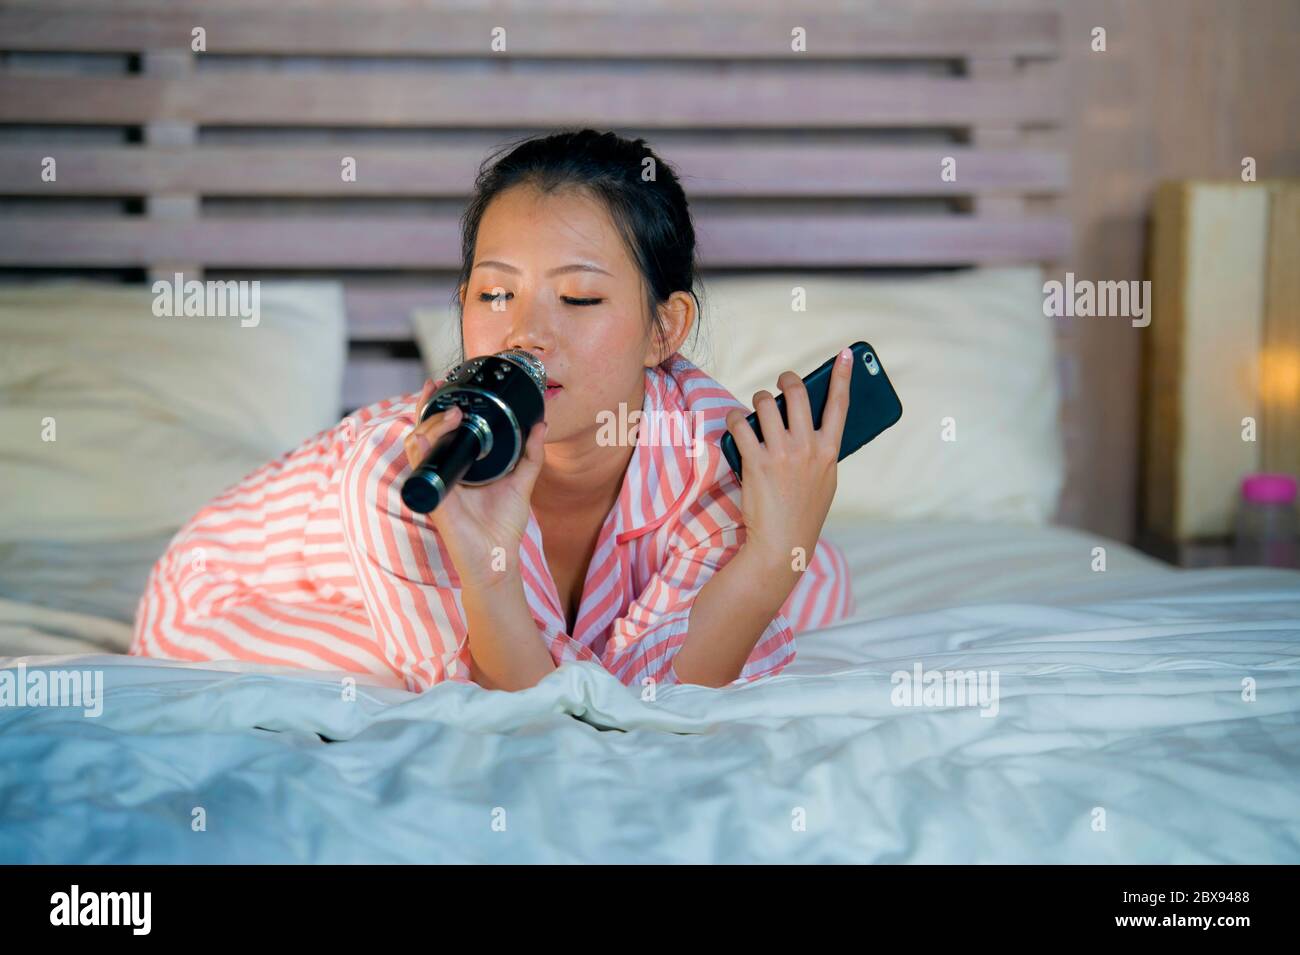 Junge glücklich und schön asiatisch amerikanischen Teenager Mädchen singen Karaoke-Song aufgeregt zu Hause Schlafzimmer halten Handy spielen auf Bett aufgeregt und ch Stockfoto